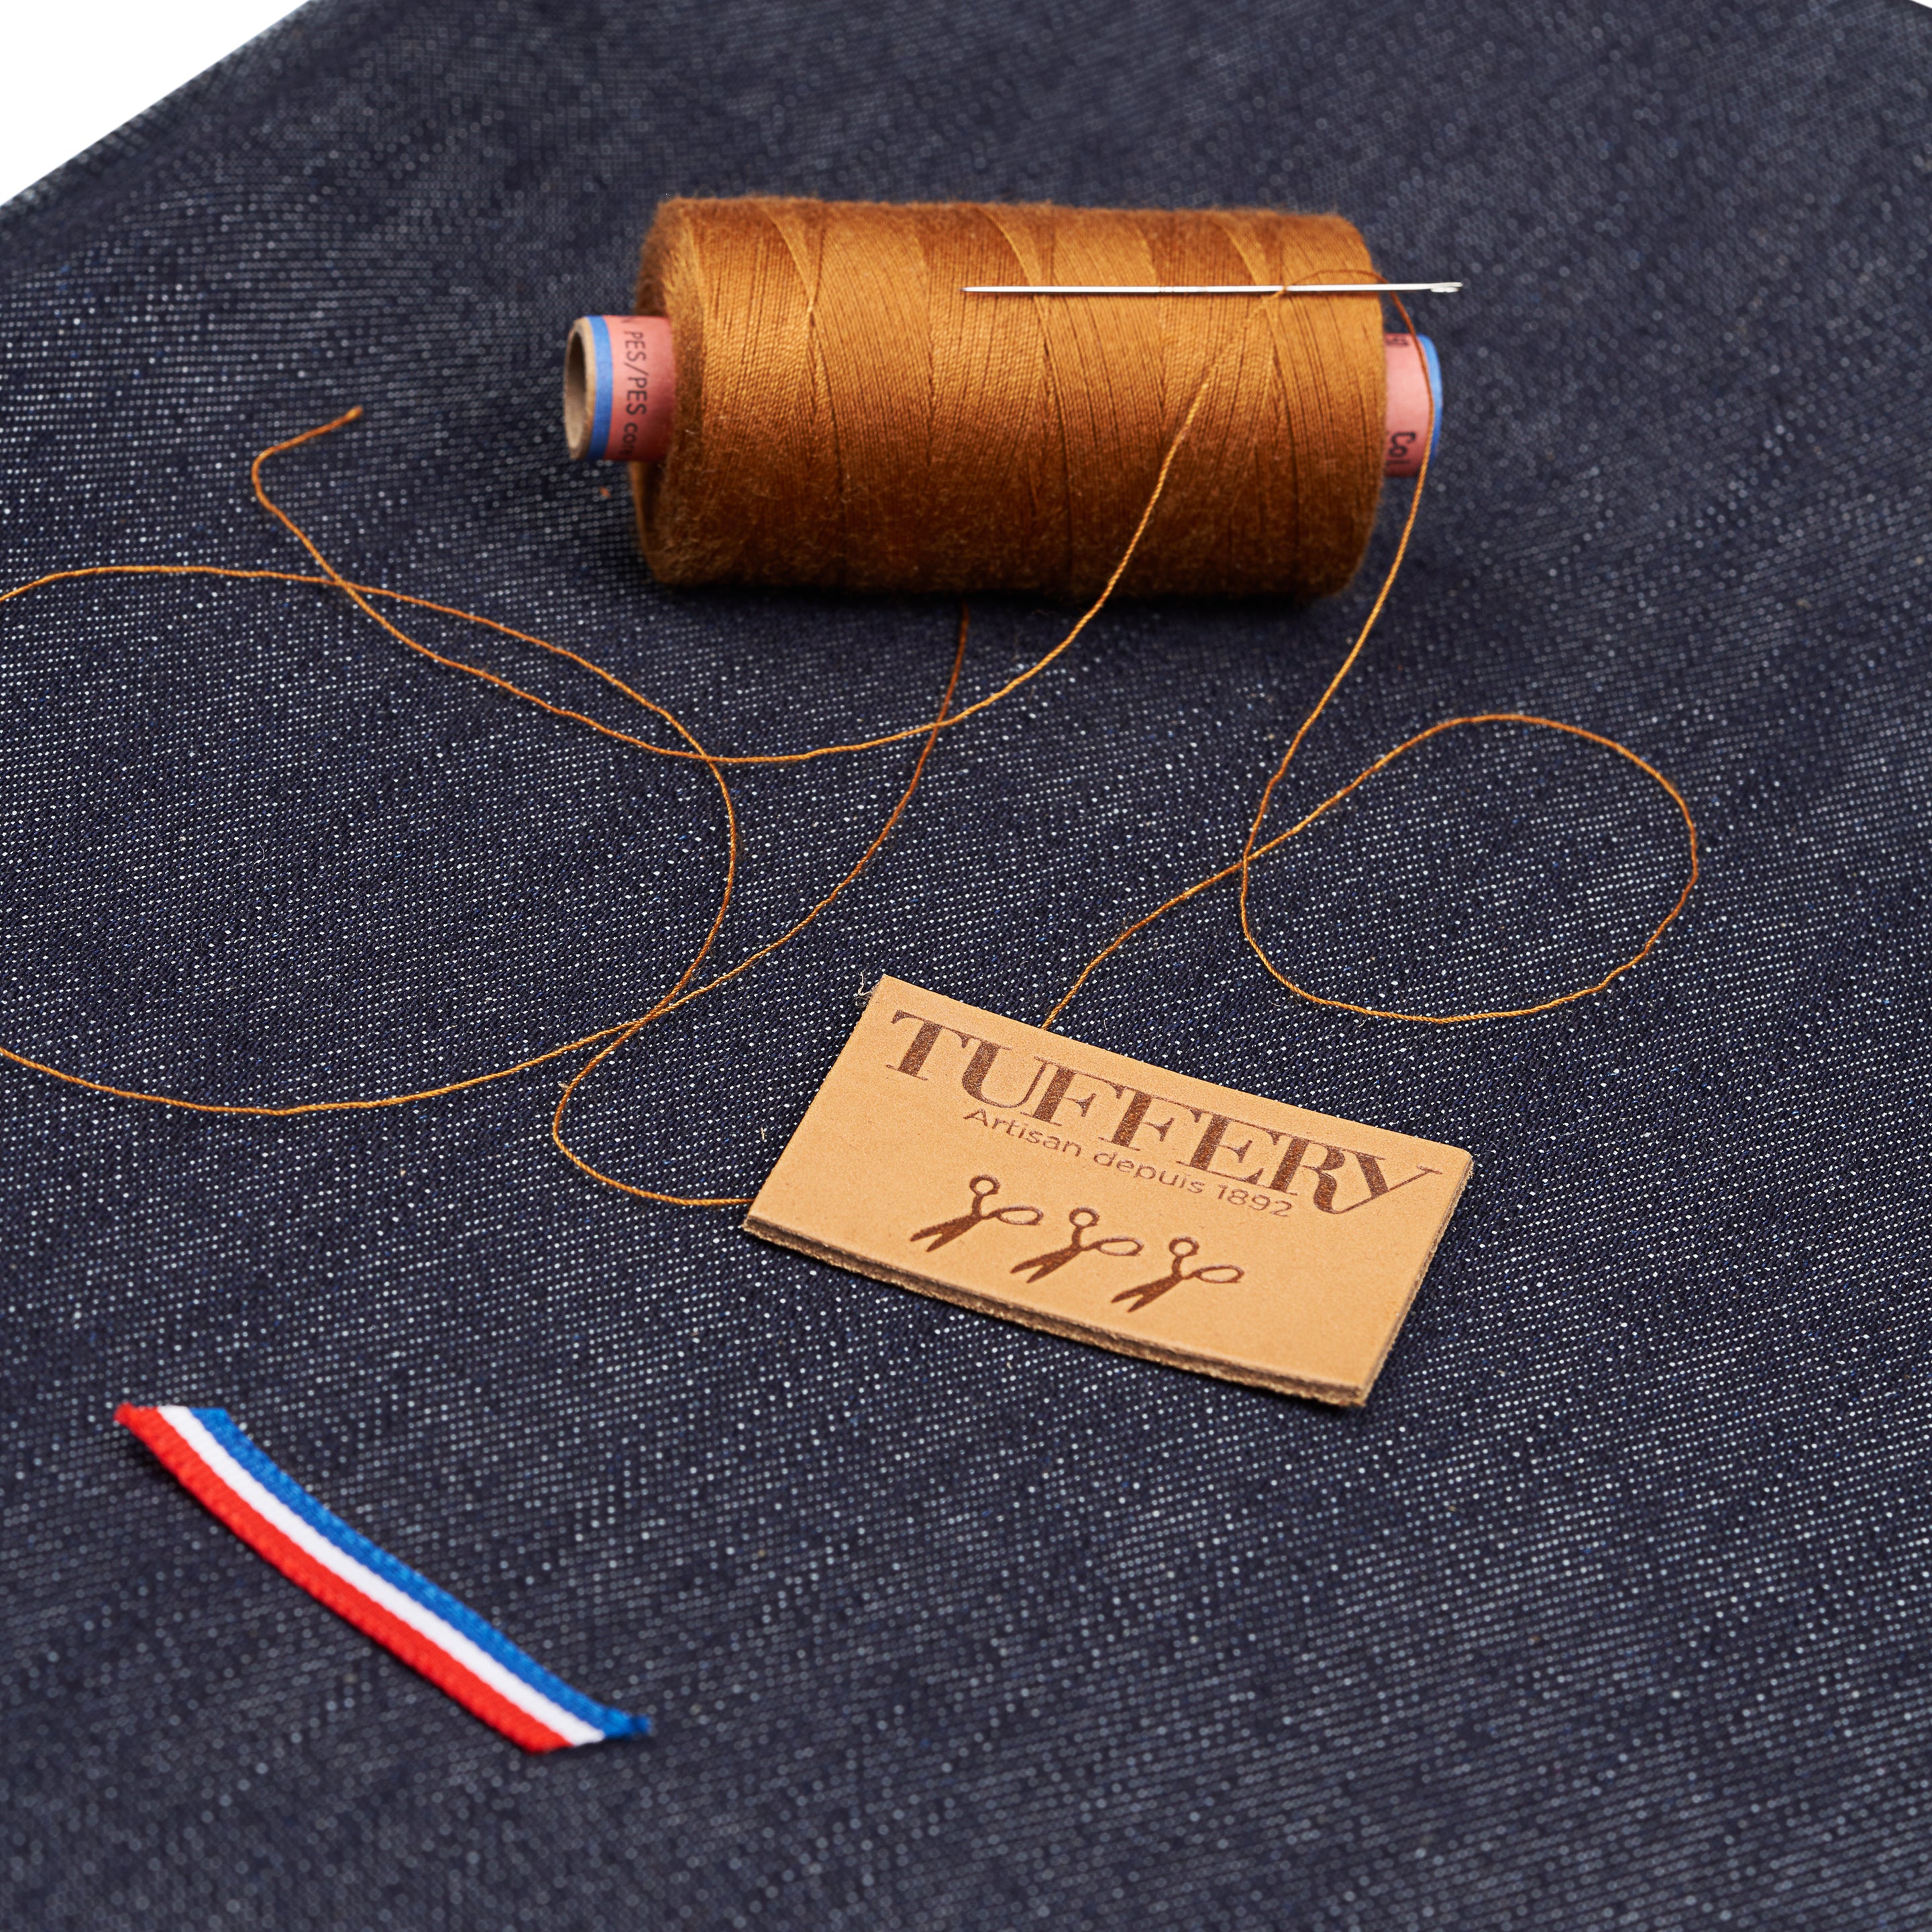 Le kit couture à la maison - DIY – Atelier Tuffery